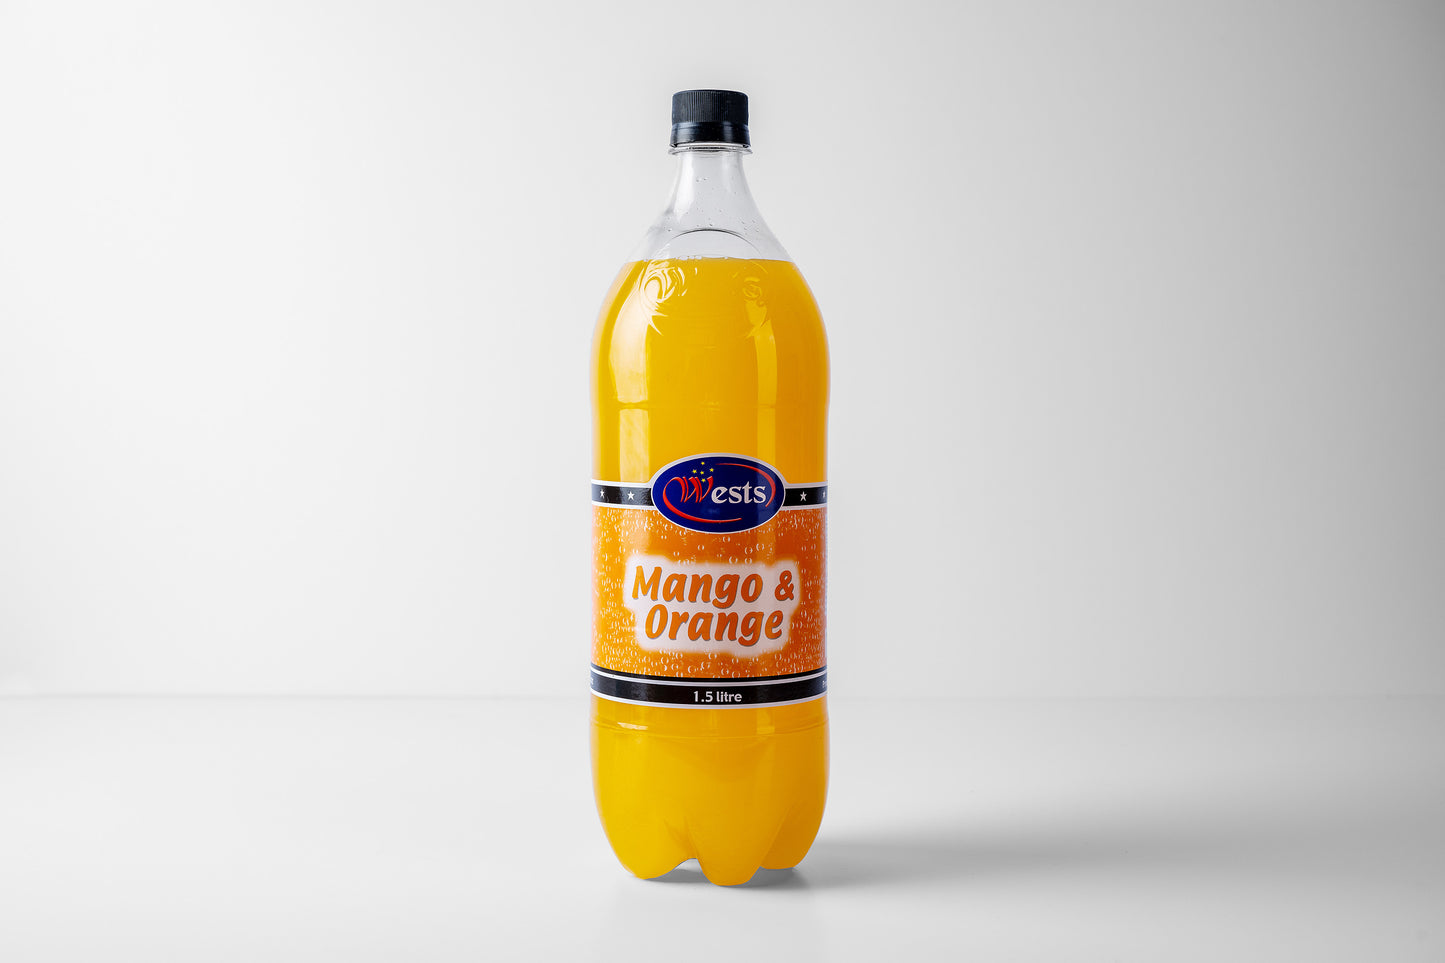 Mango & Orange